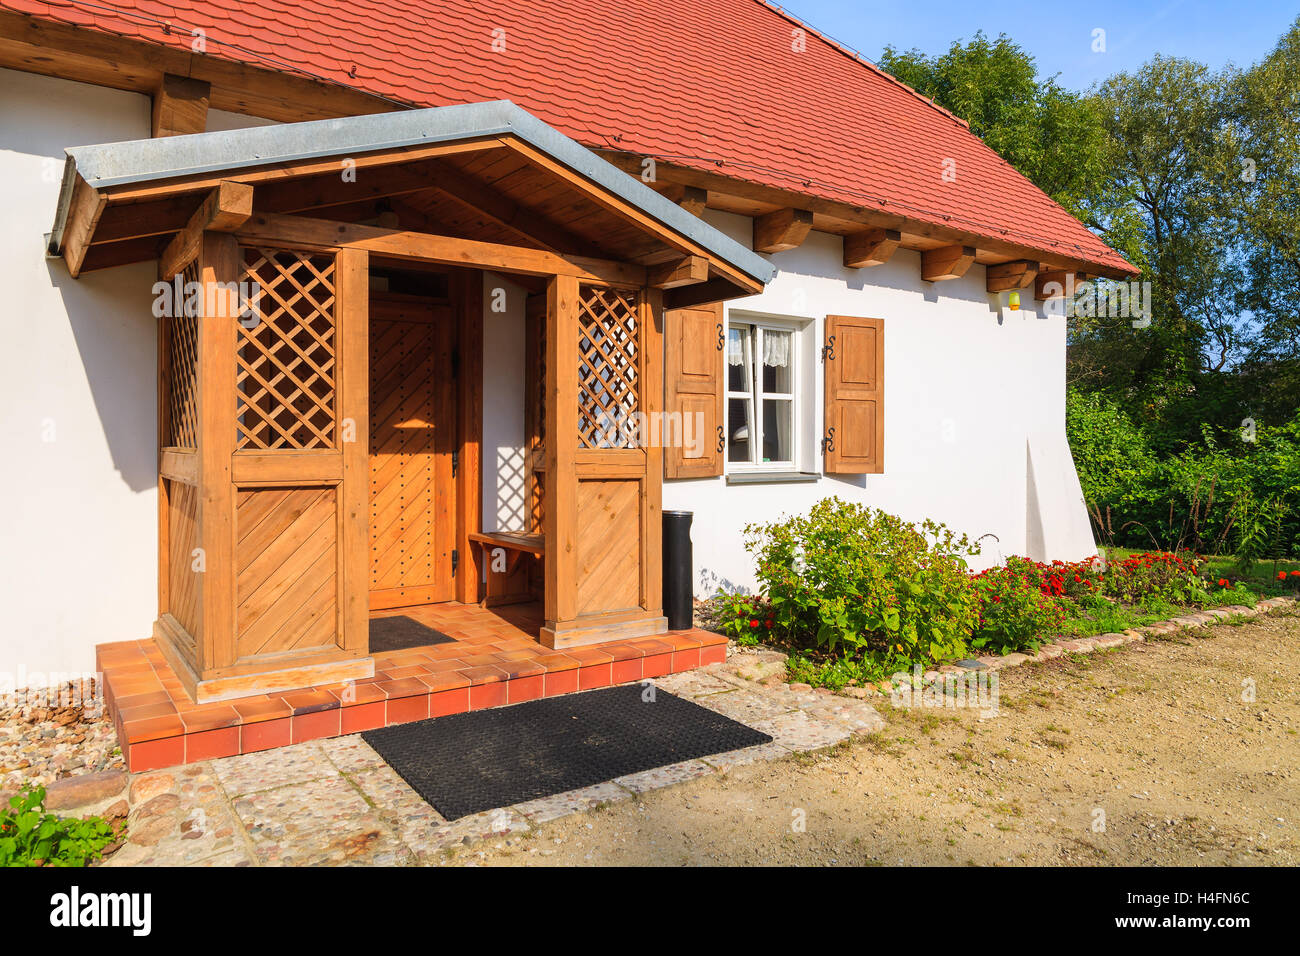 Entrée de maison cottage traditionnel en zone rurale de Radziejowice village, Pologne Banque D'Images